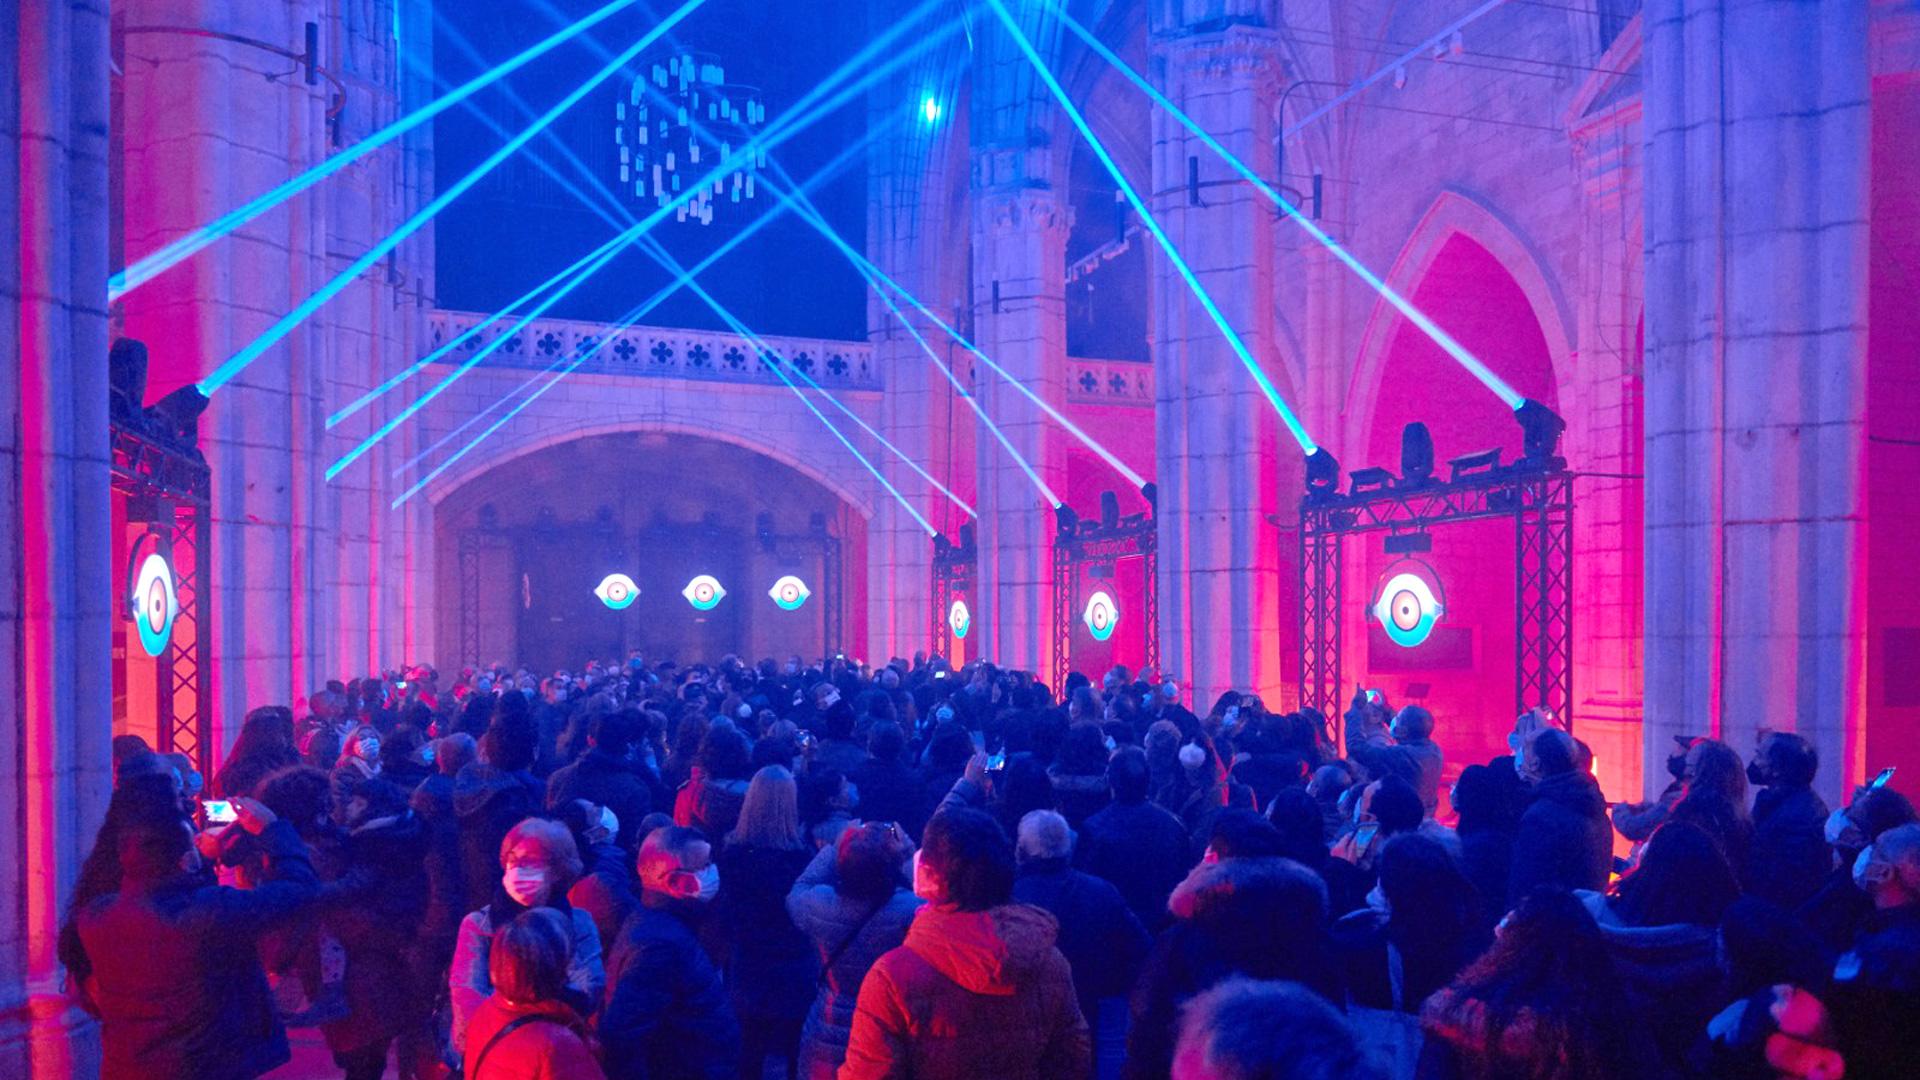 Spanish Light Festival lit up by PROLIGHTS